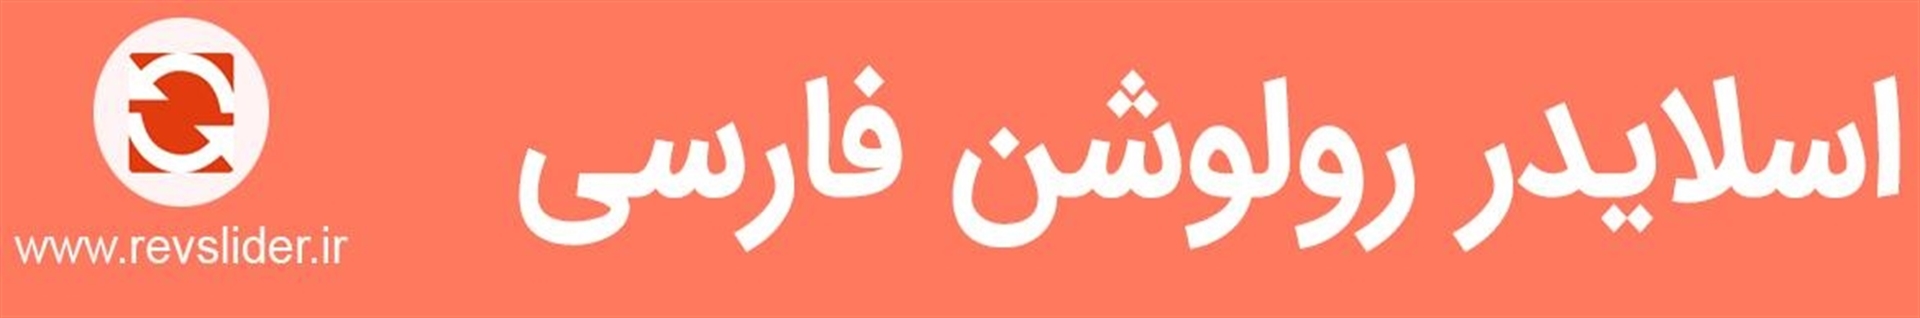 اسلایدر رولوشن فارسی